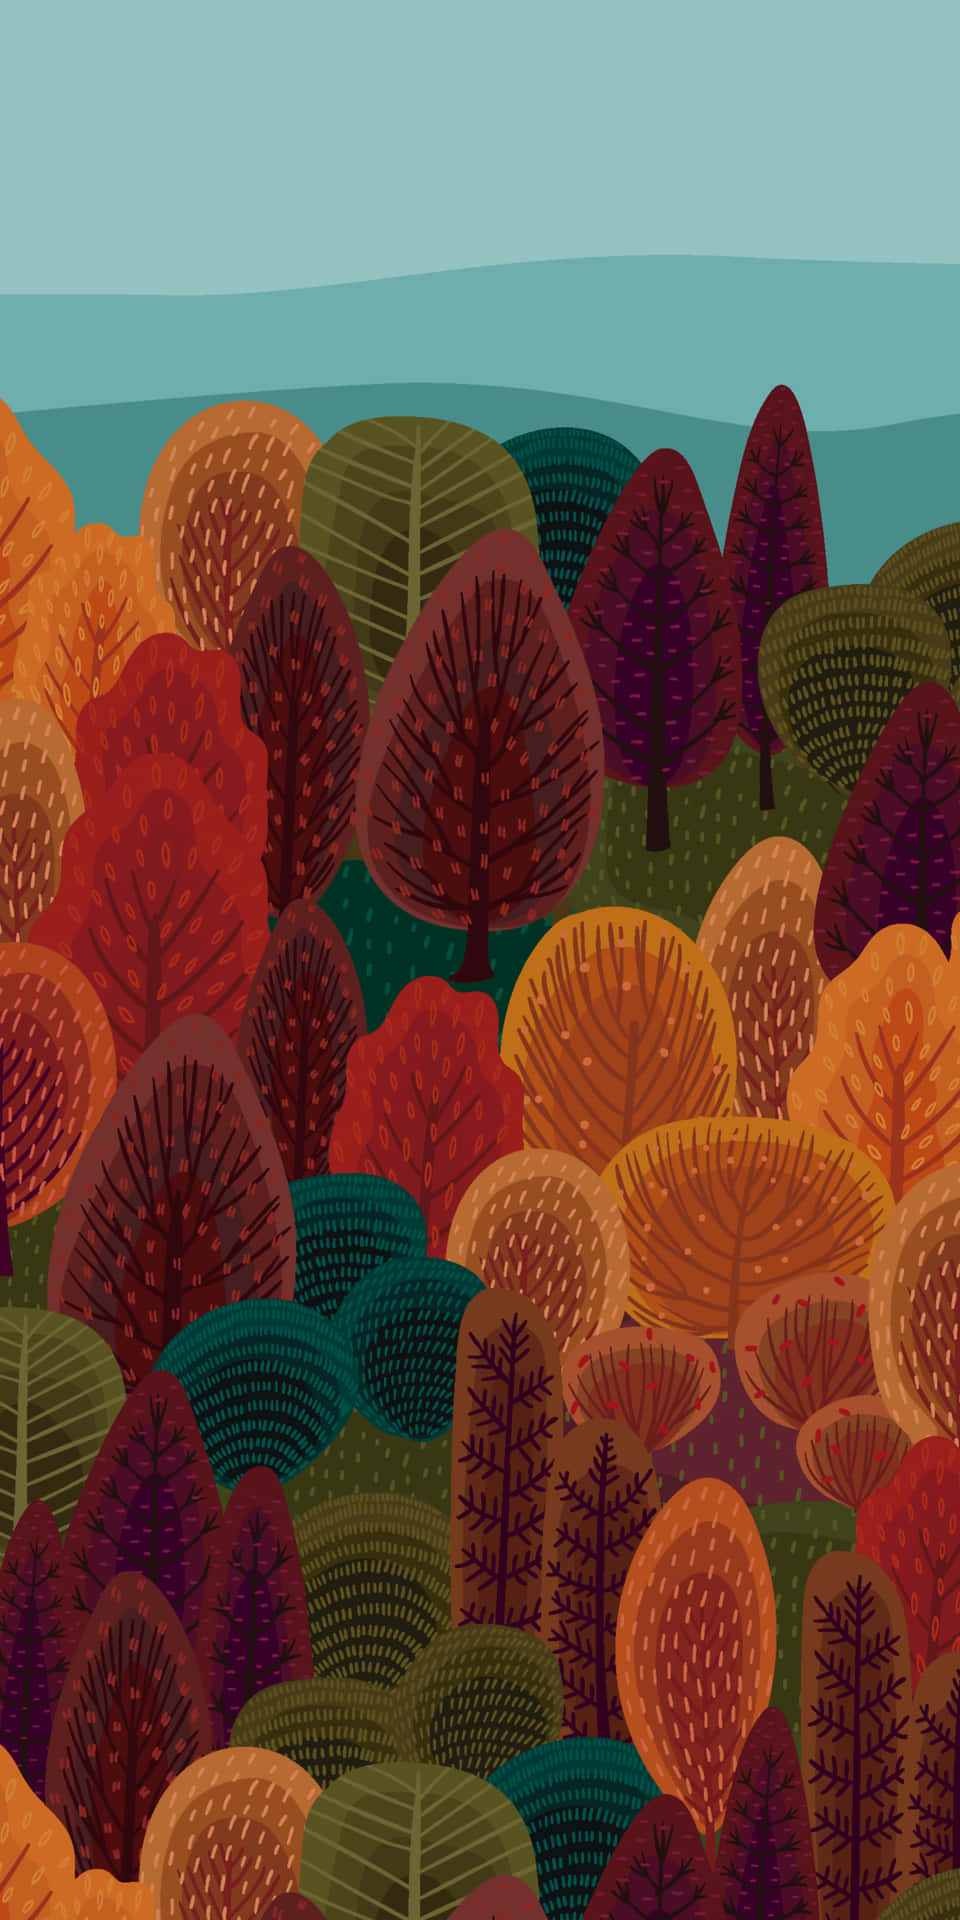 Pinturado Fã De Outono Do Pixel 3 De Vários Fundos De Árvores.